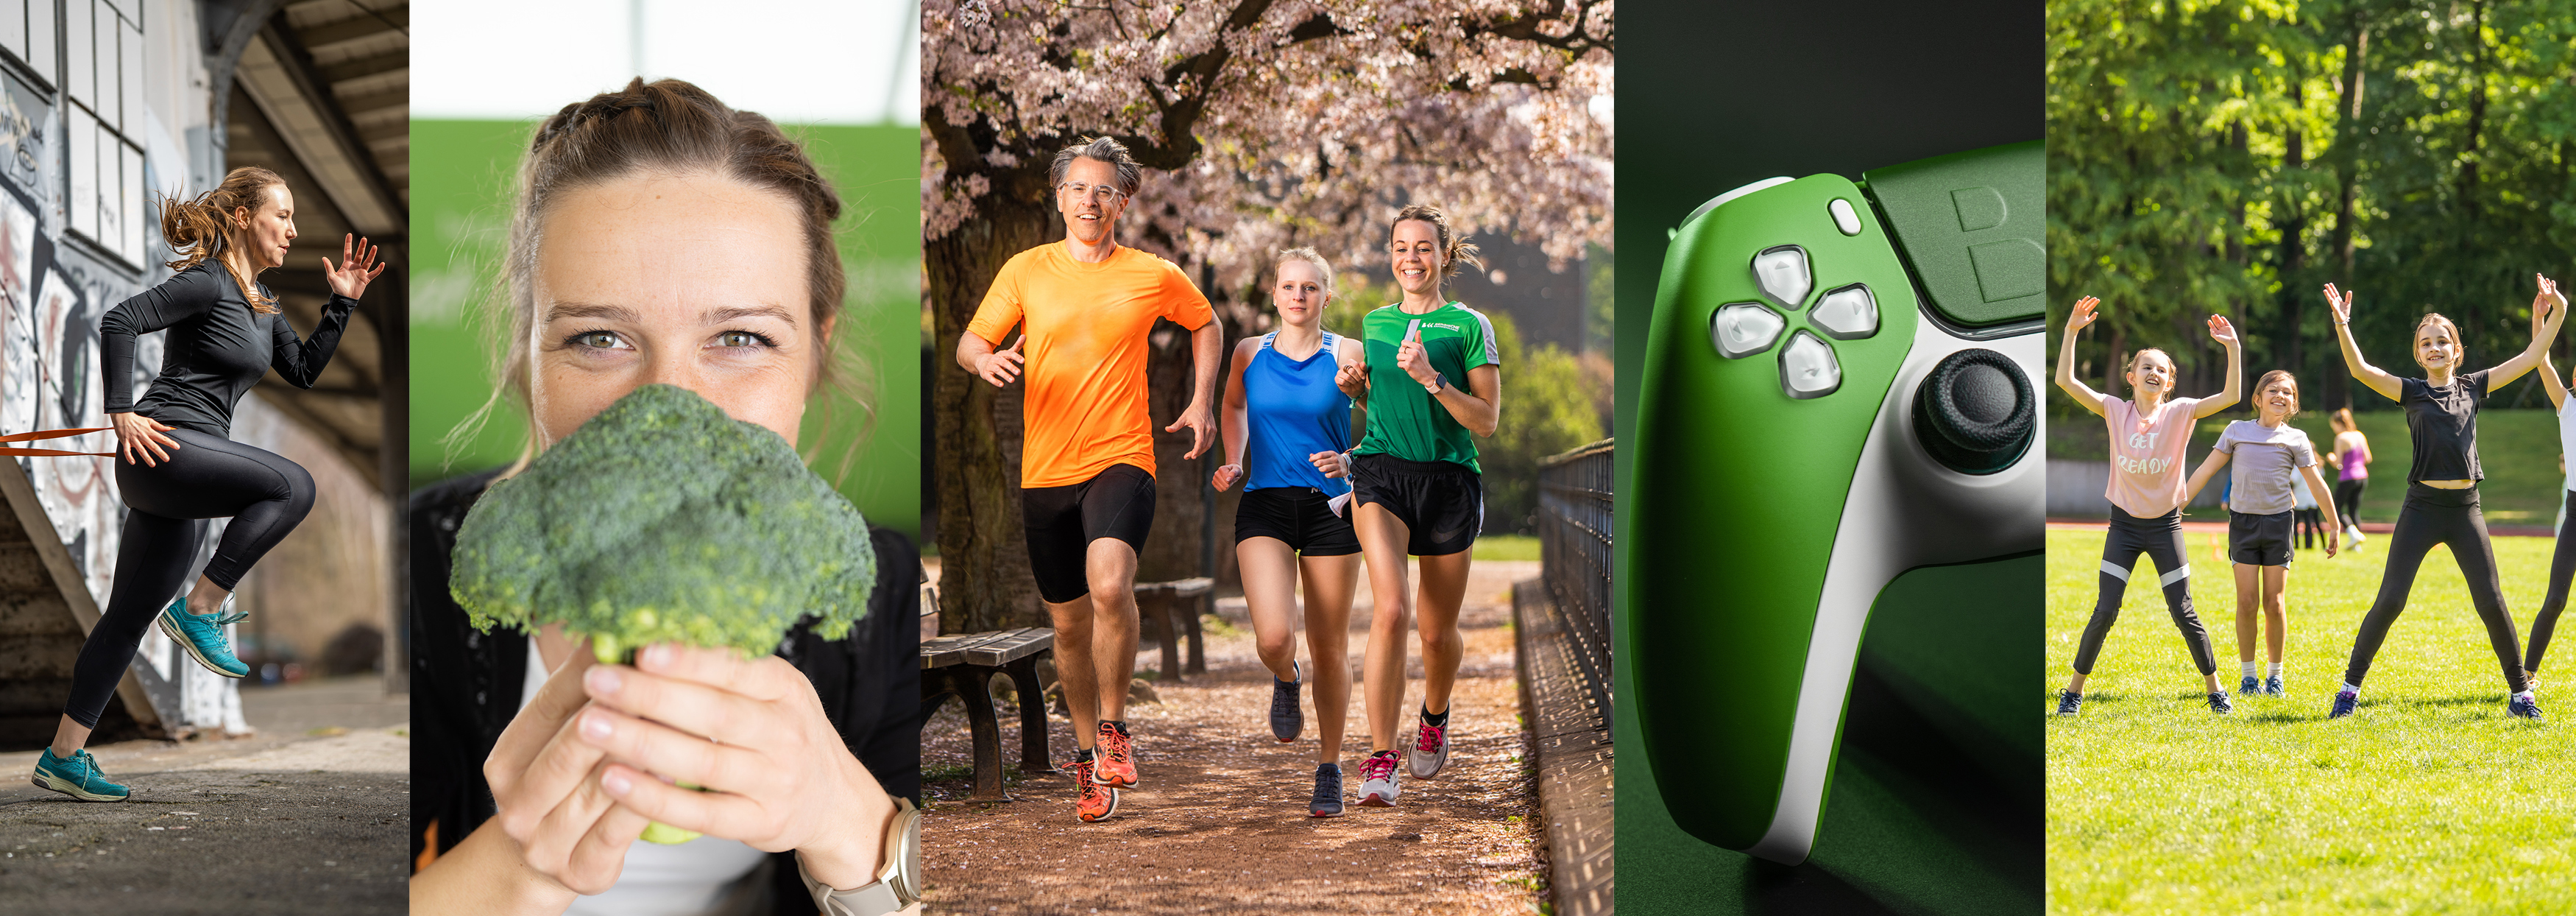 Collagenbild mit Läufern, Sportlerin, Gaming Controller und einer Frau, die einen Brokkoli in den Händen hält.